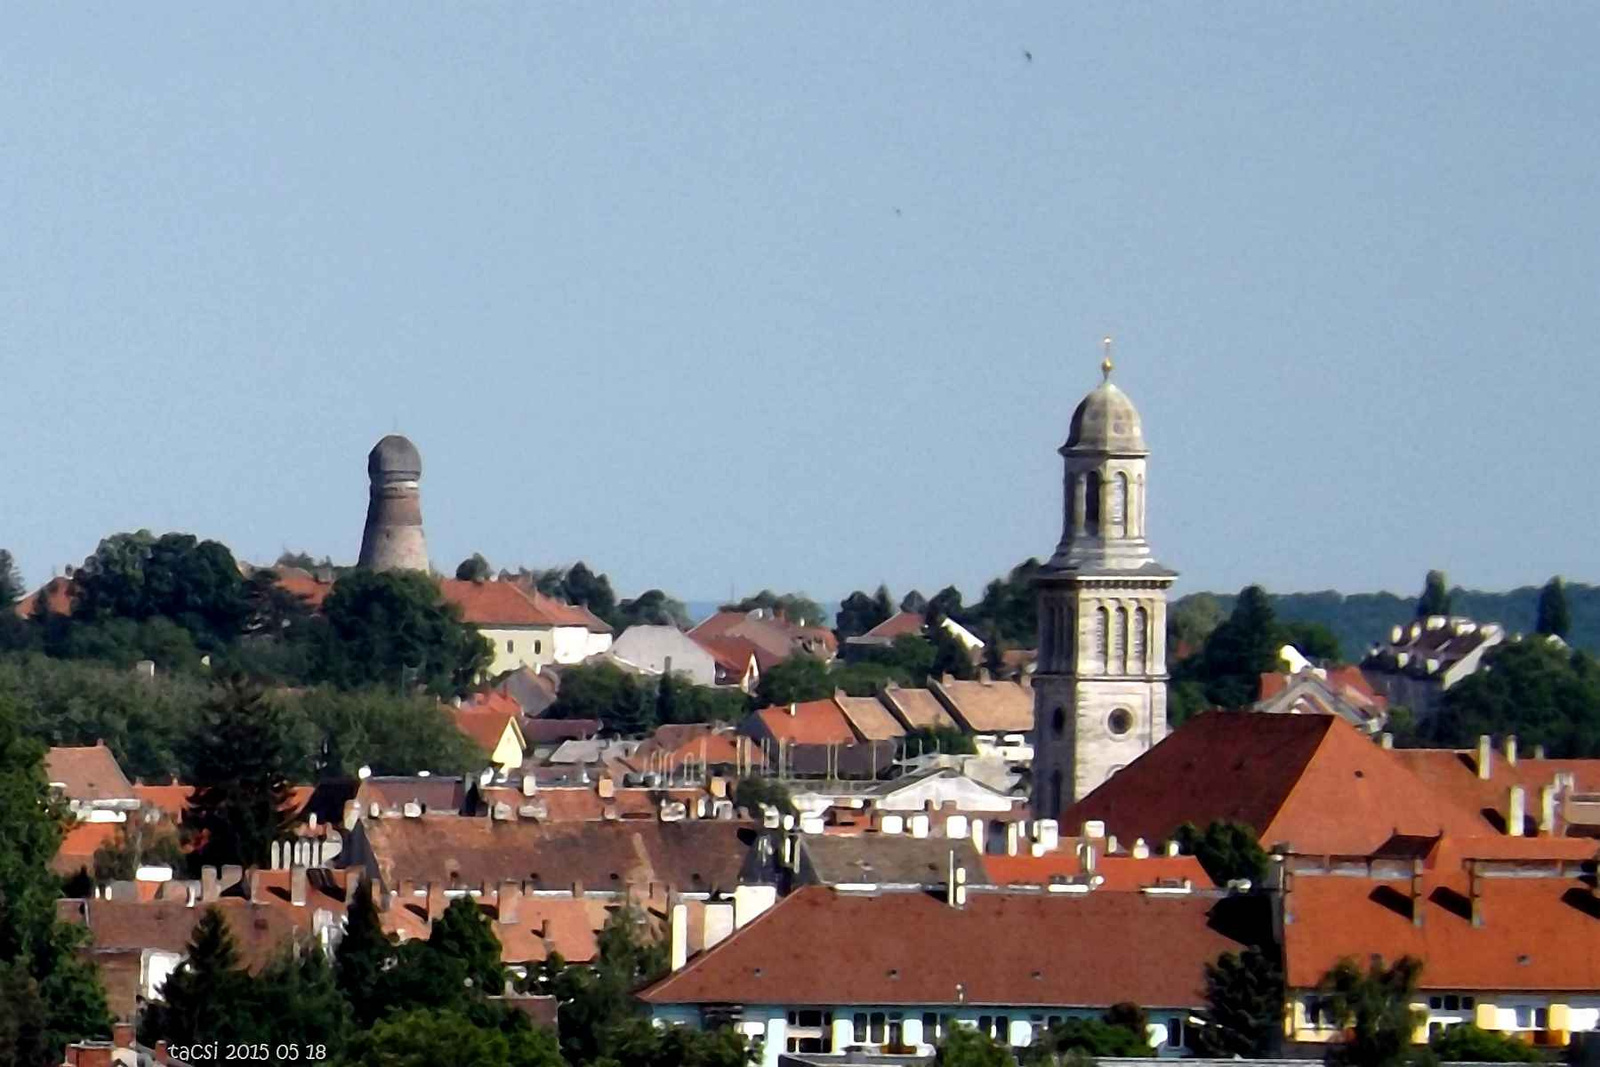 Soproni panoráma részlet